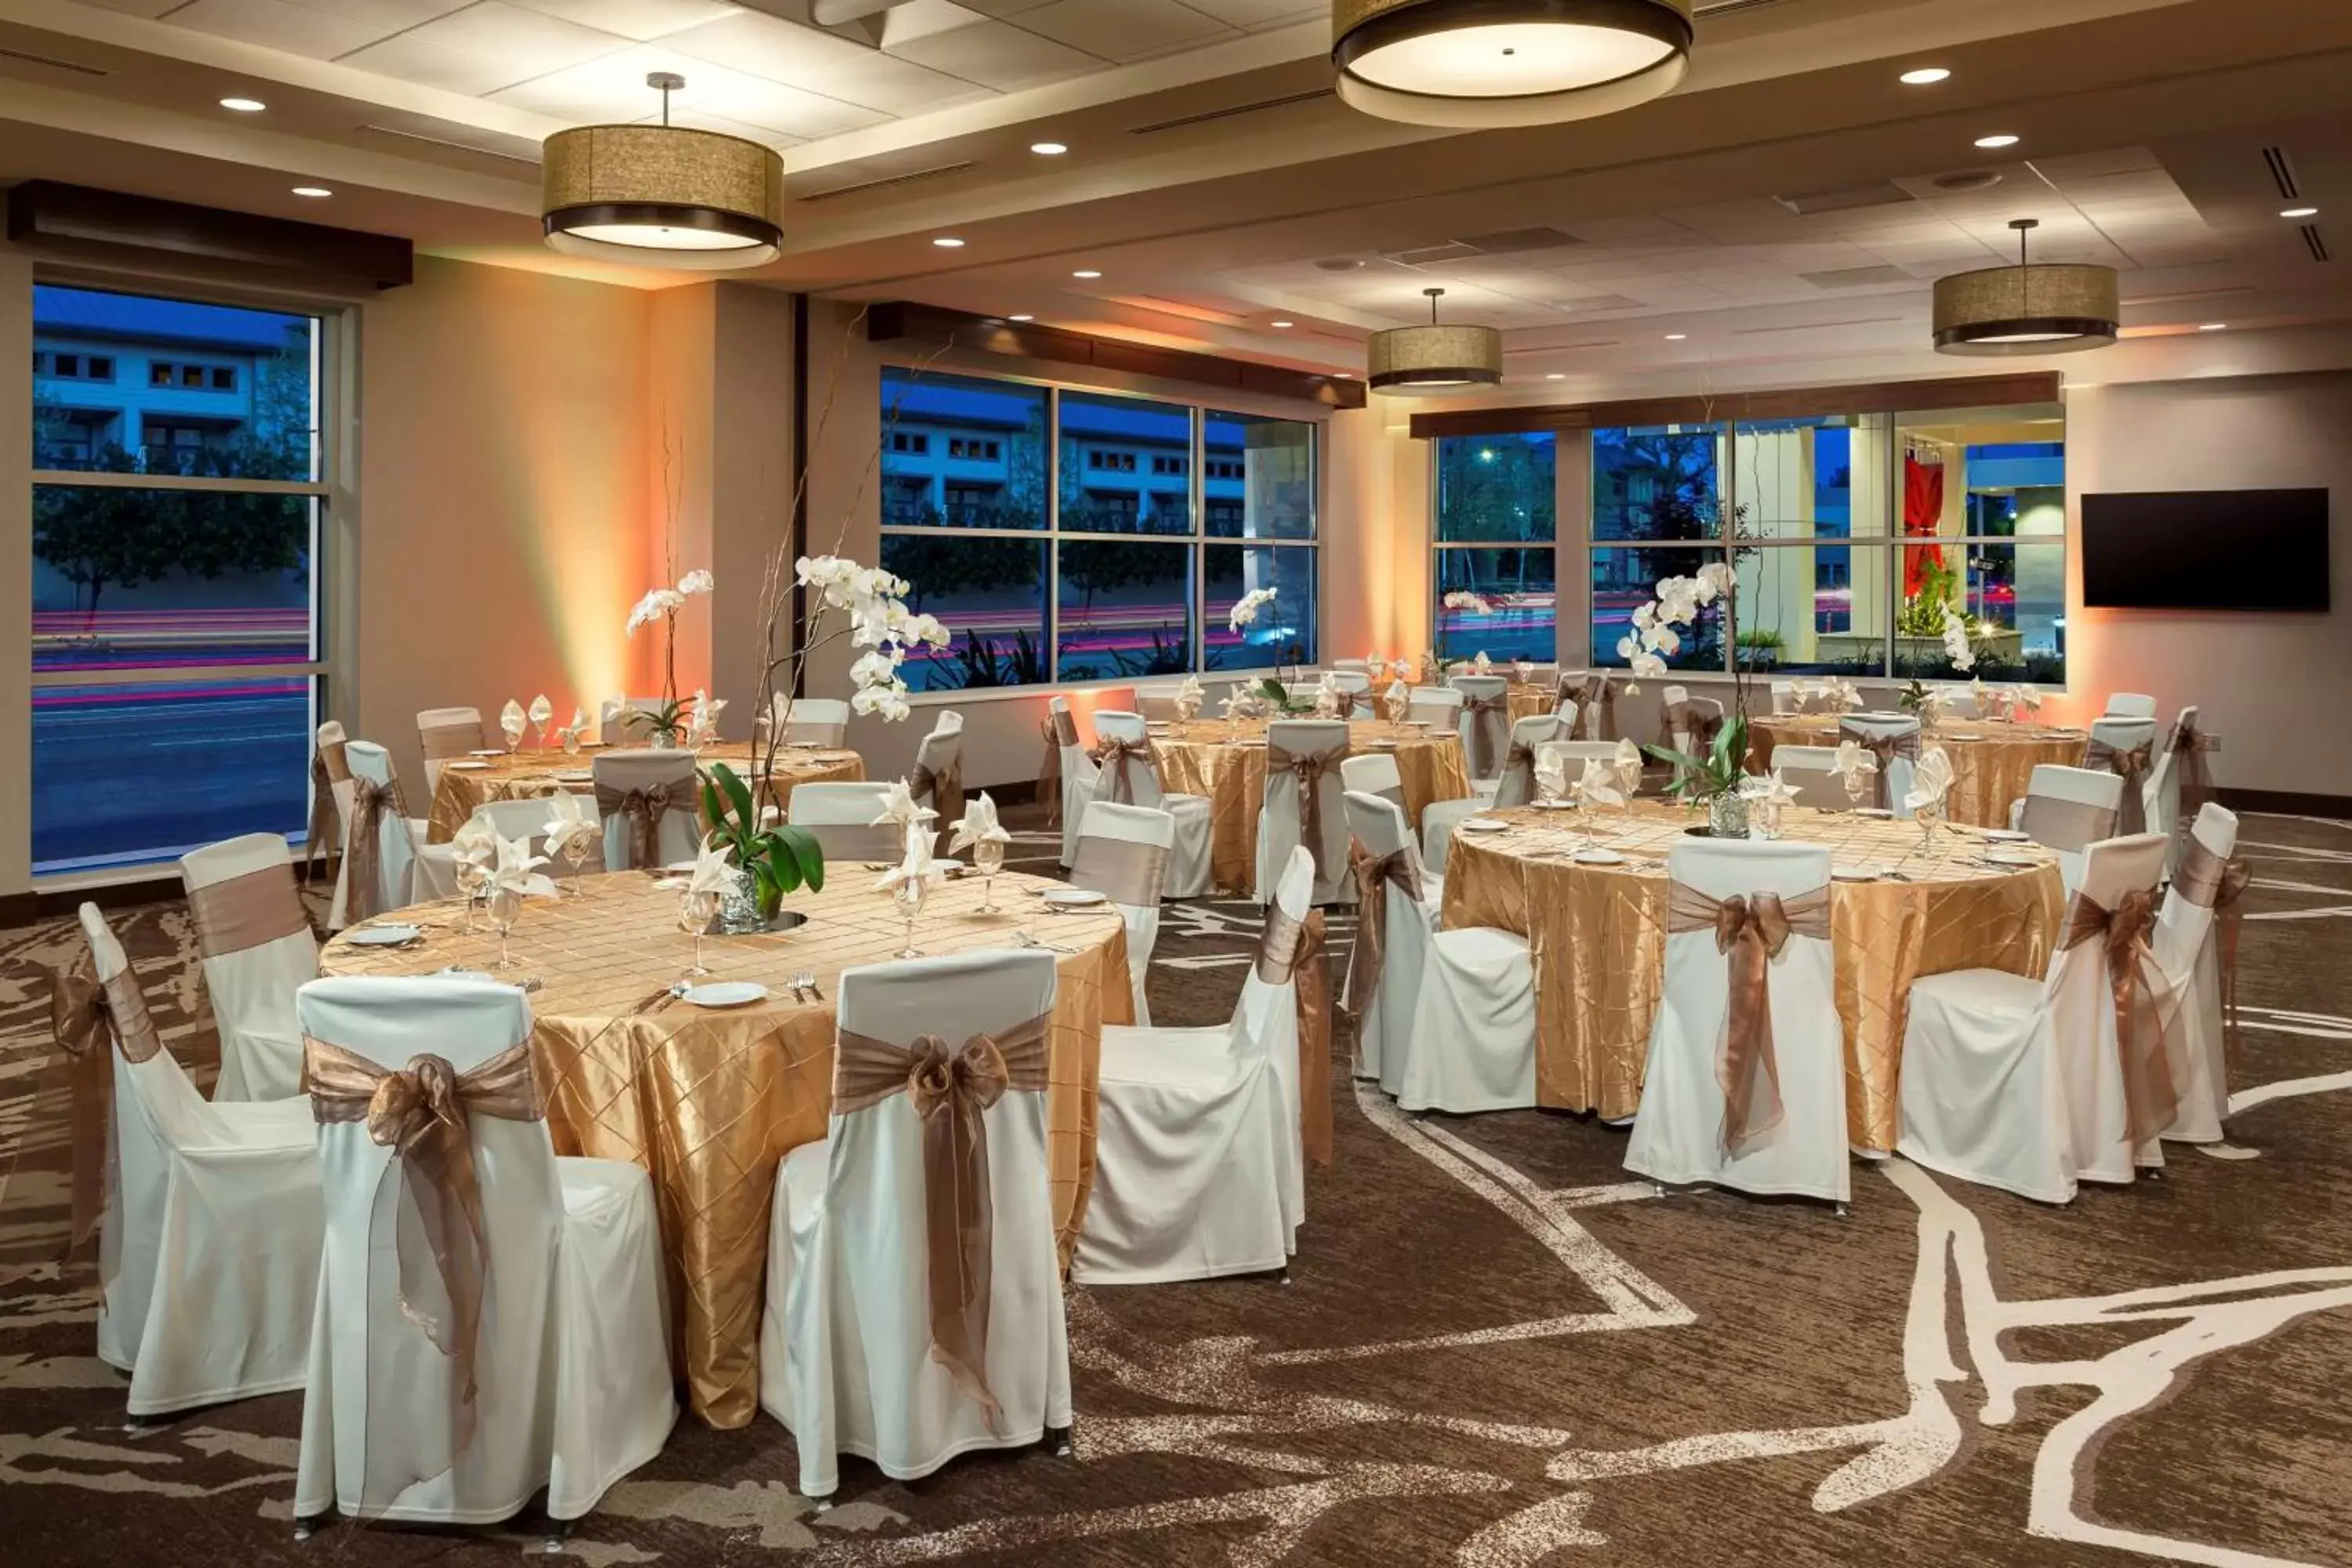 Meeting/conference room, Banquet Facilities in Hilton Garden Inn Palo Alto